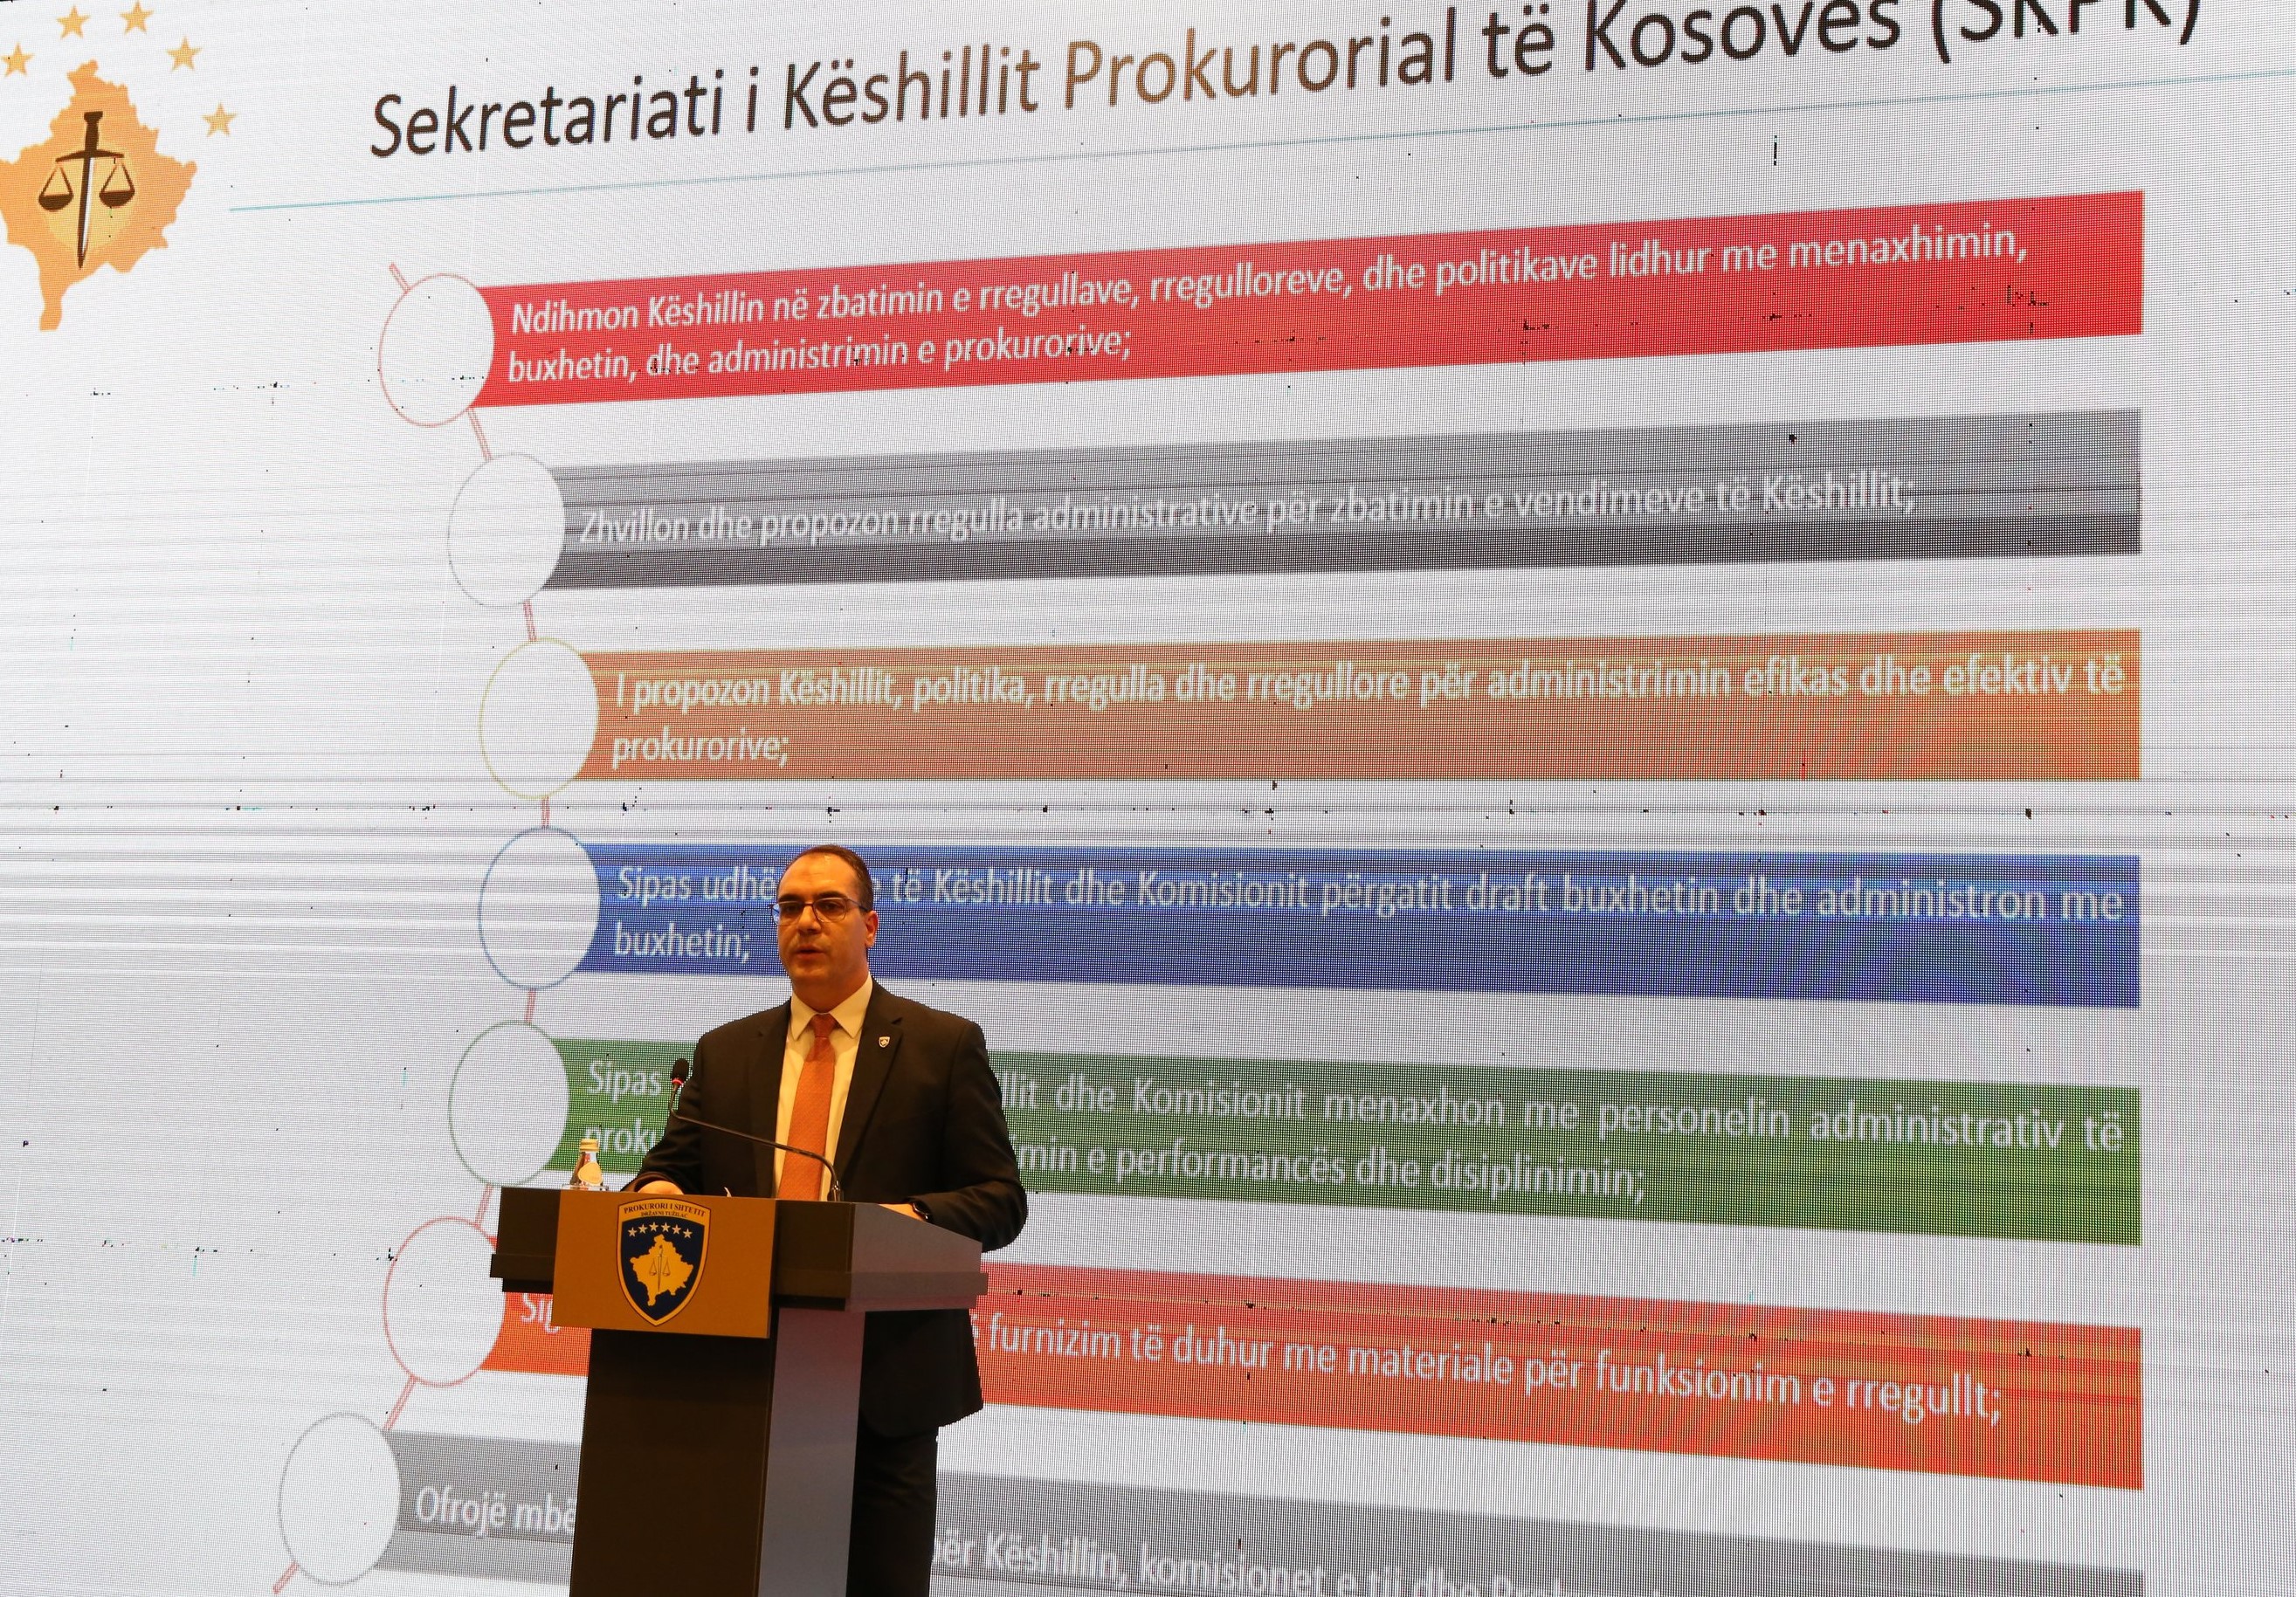 Predstavljeni su događaji u administraciji tužilačkog sistema Kosova